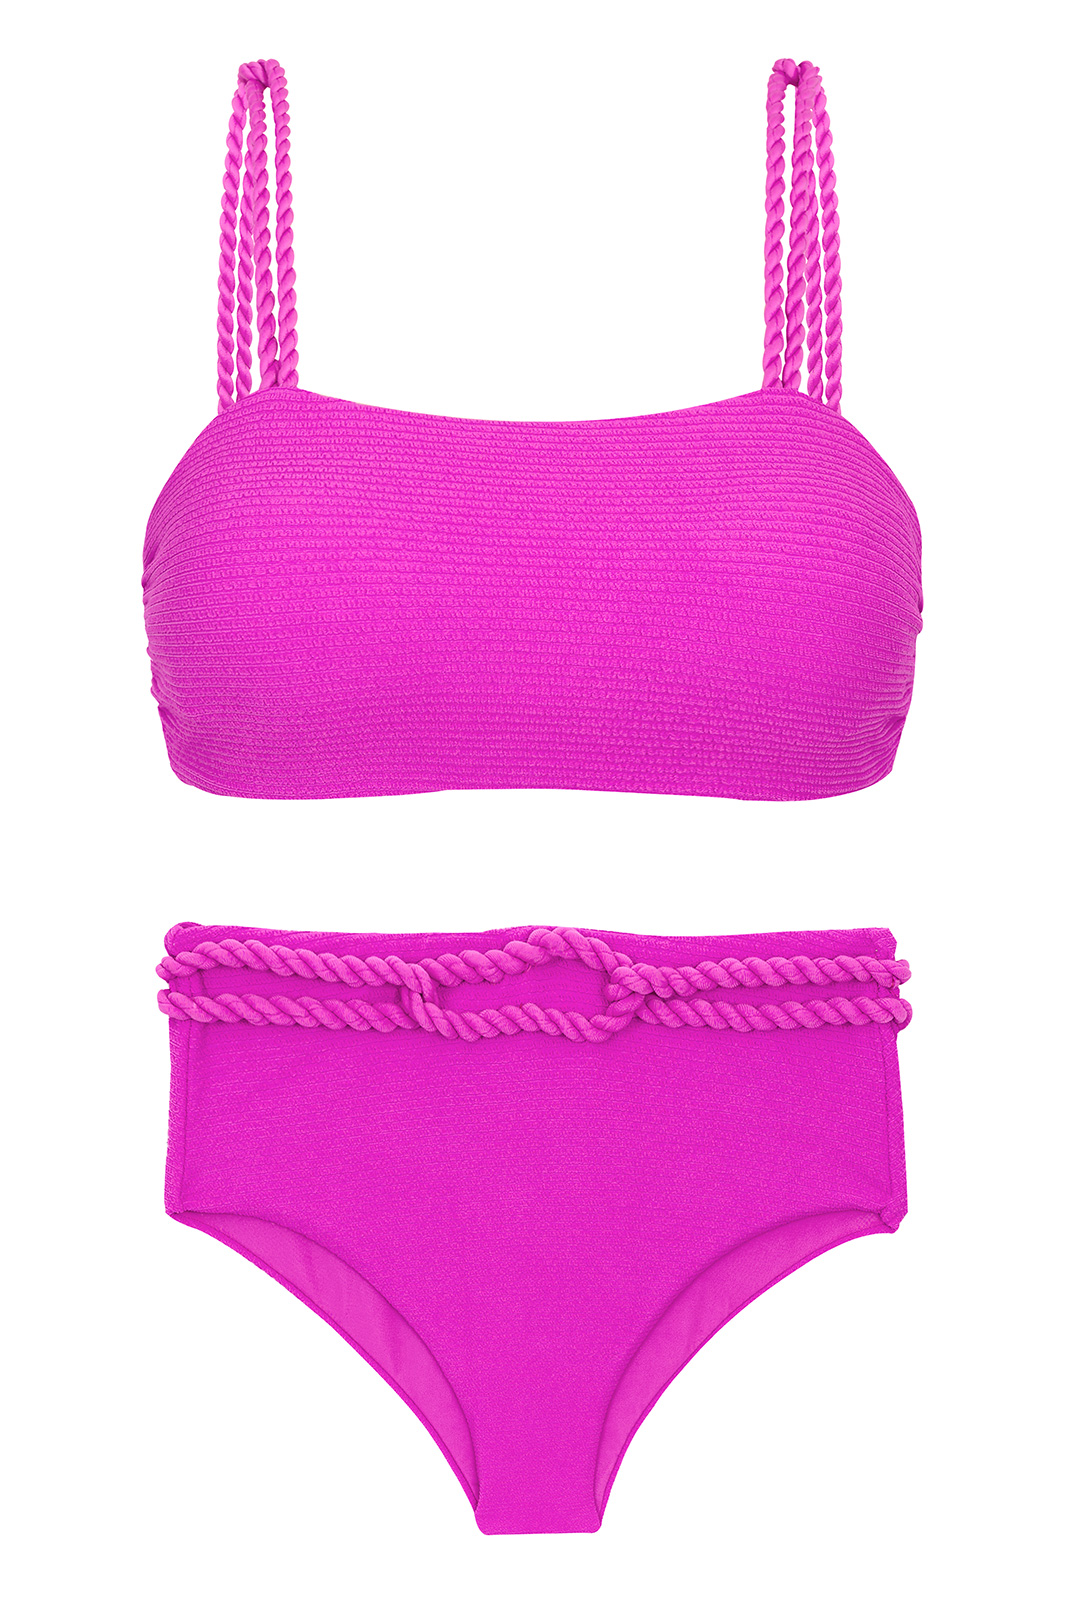 De Bikini De Cintura Alta Rosa Magenta Con Cuerda Torcida - Set St-tropez-pink Reto Hotpant-high de Sol